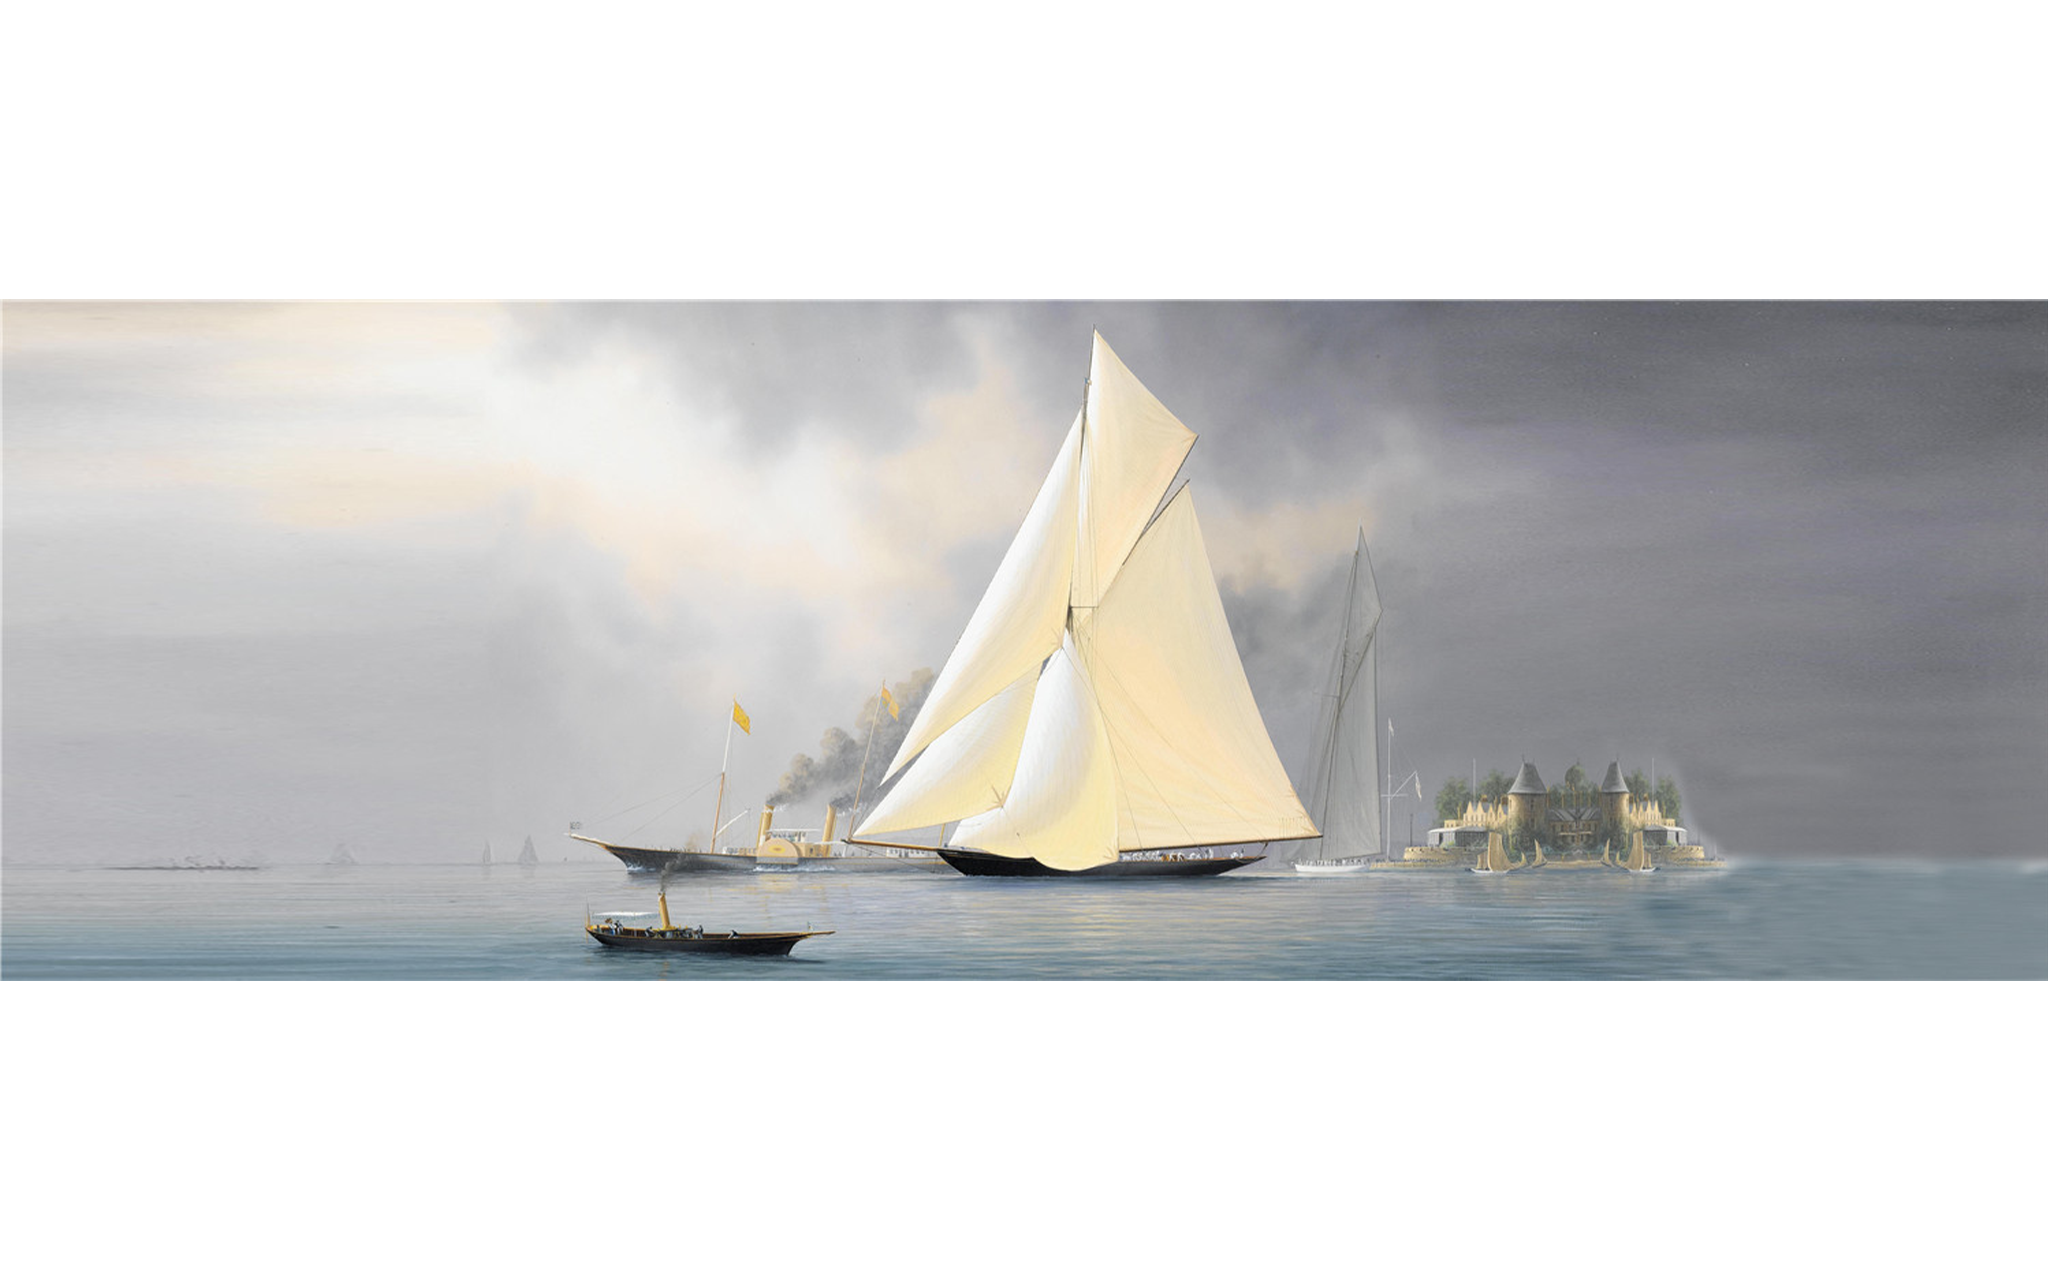 The White Sailboat